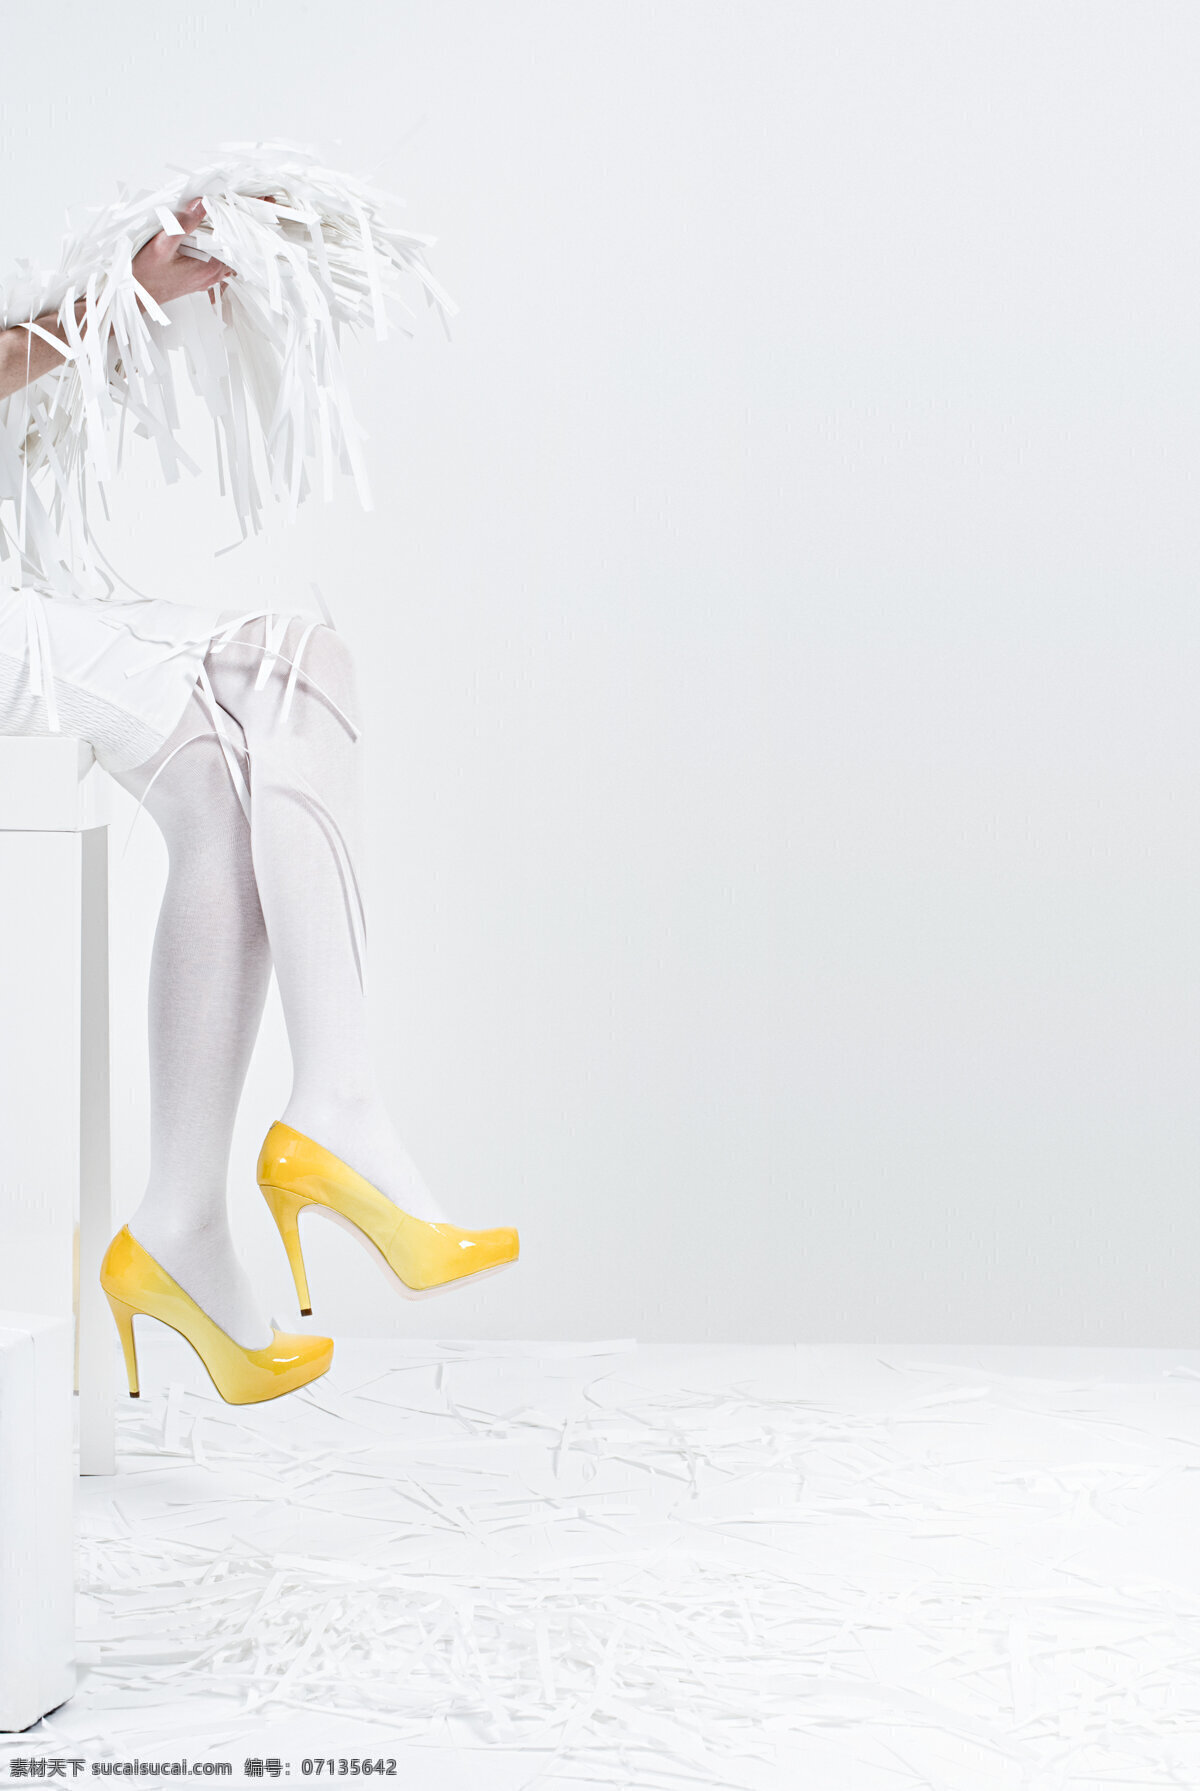 美腿图片素材 人物 时尚人物 时尚女性 白色正装 美腿 碎纸片 白色丝袜 高跟鞋 美女图片 人物图片